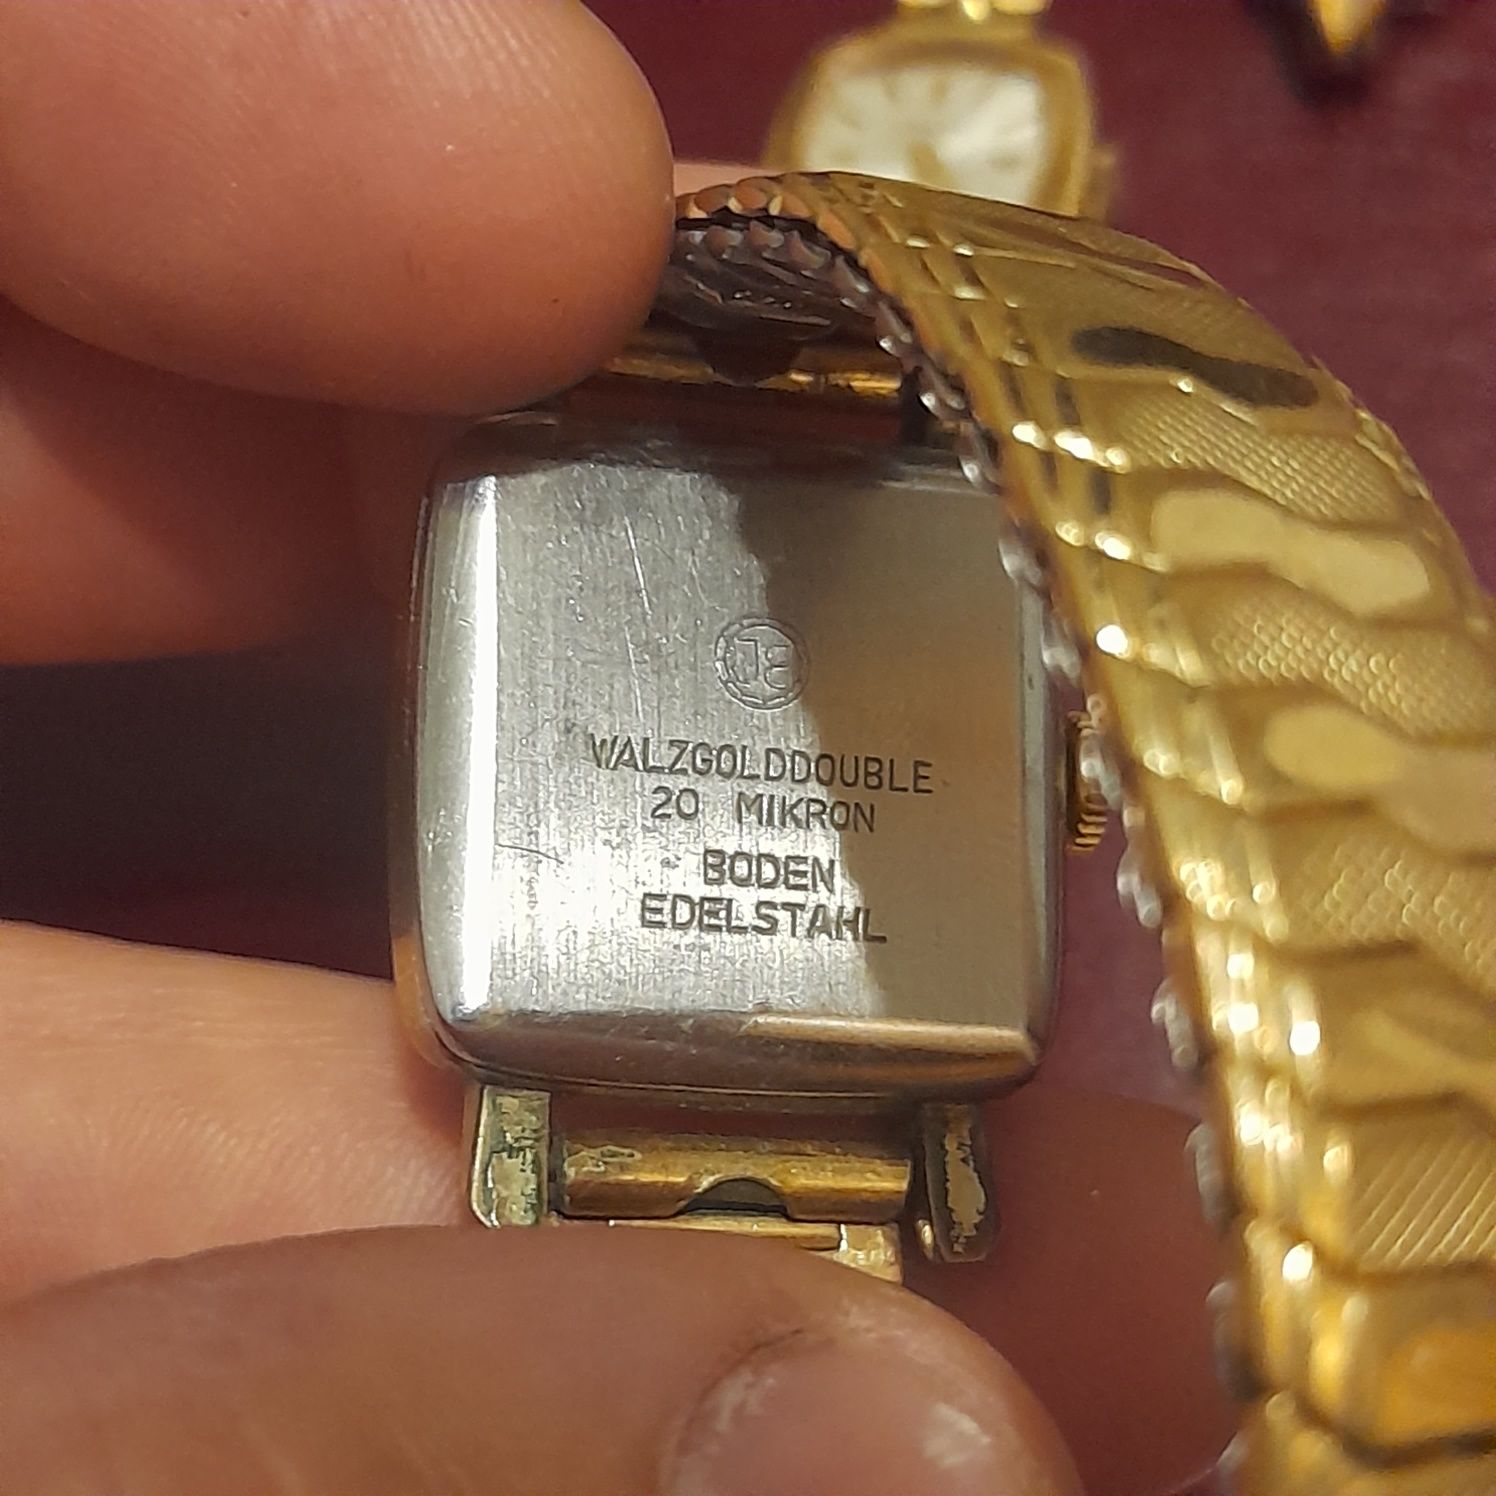 6 ceasuri damă...placate cu aur 18k